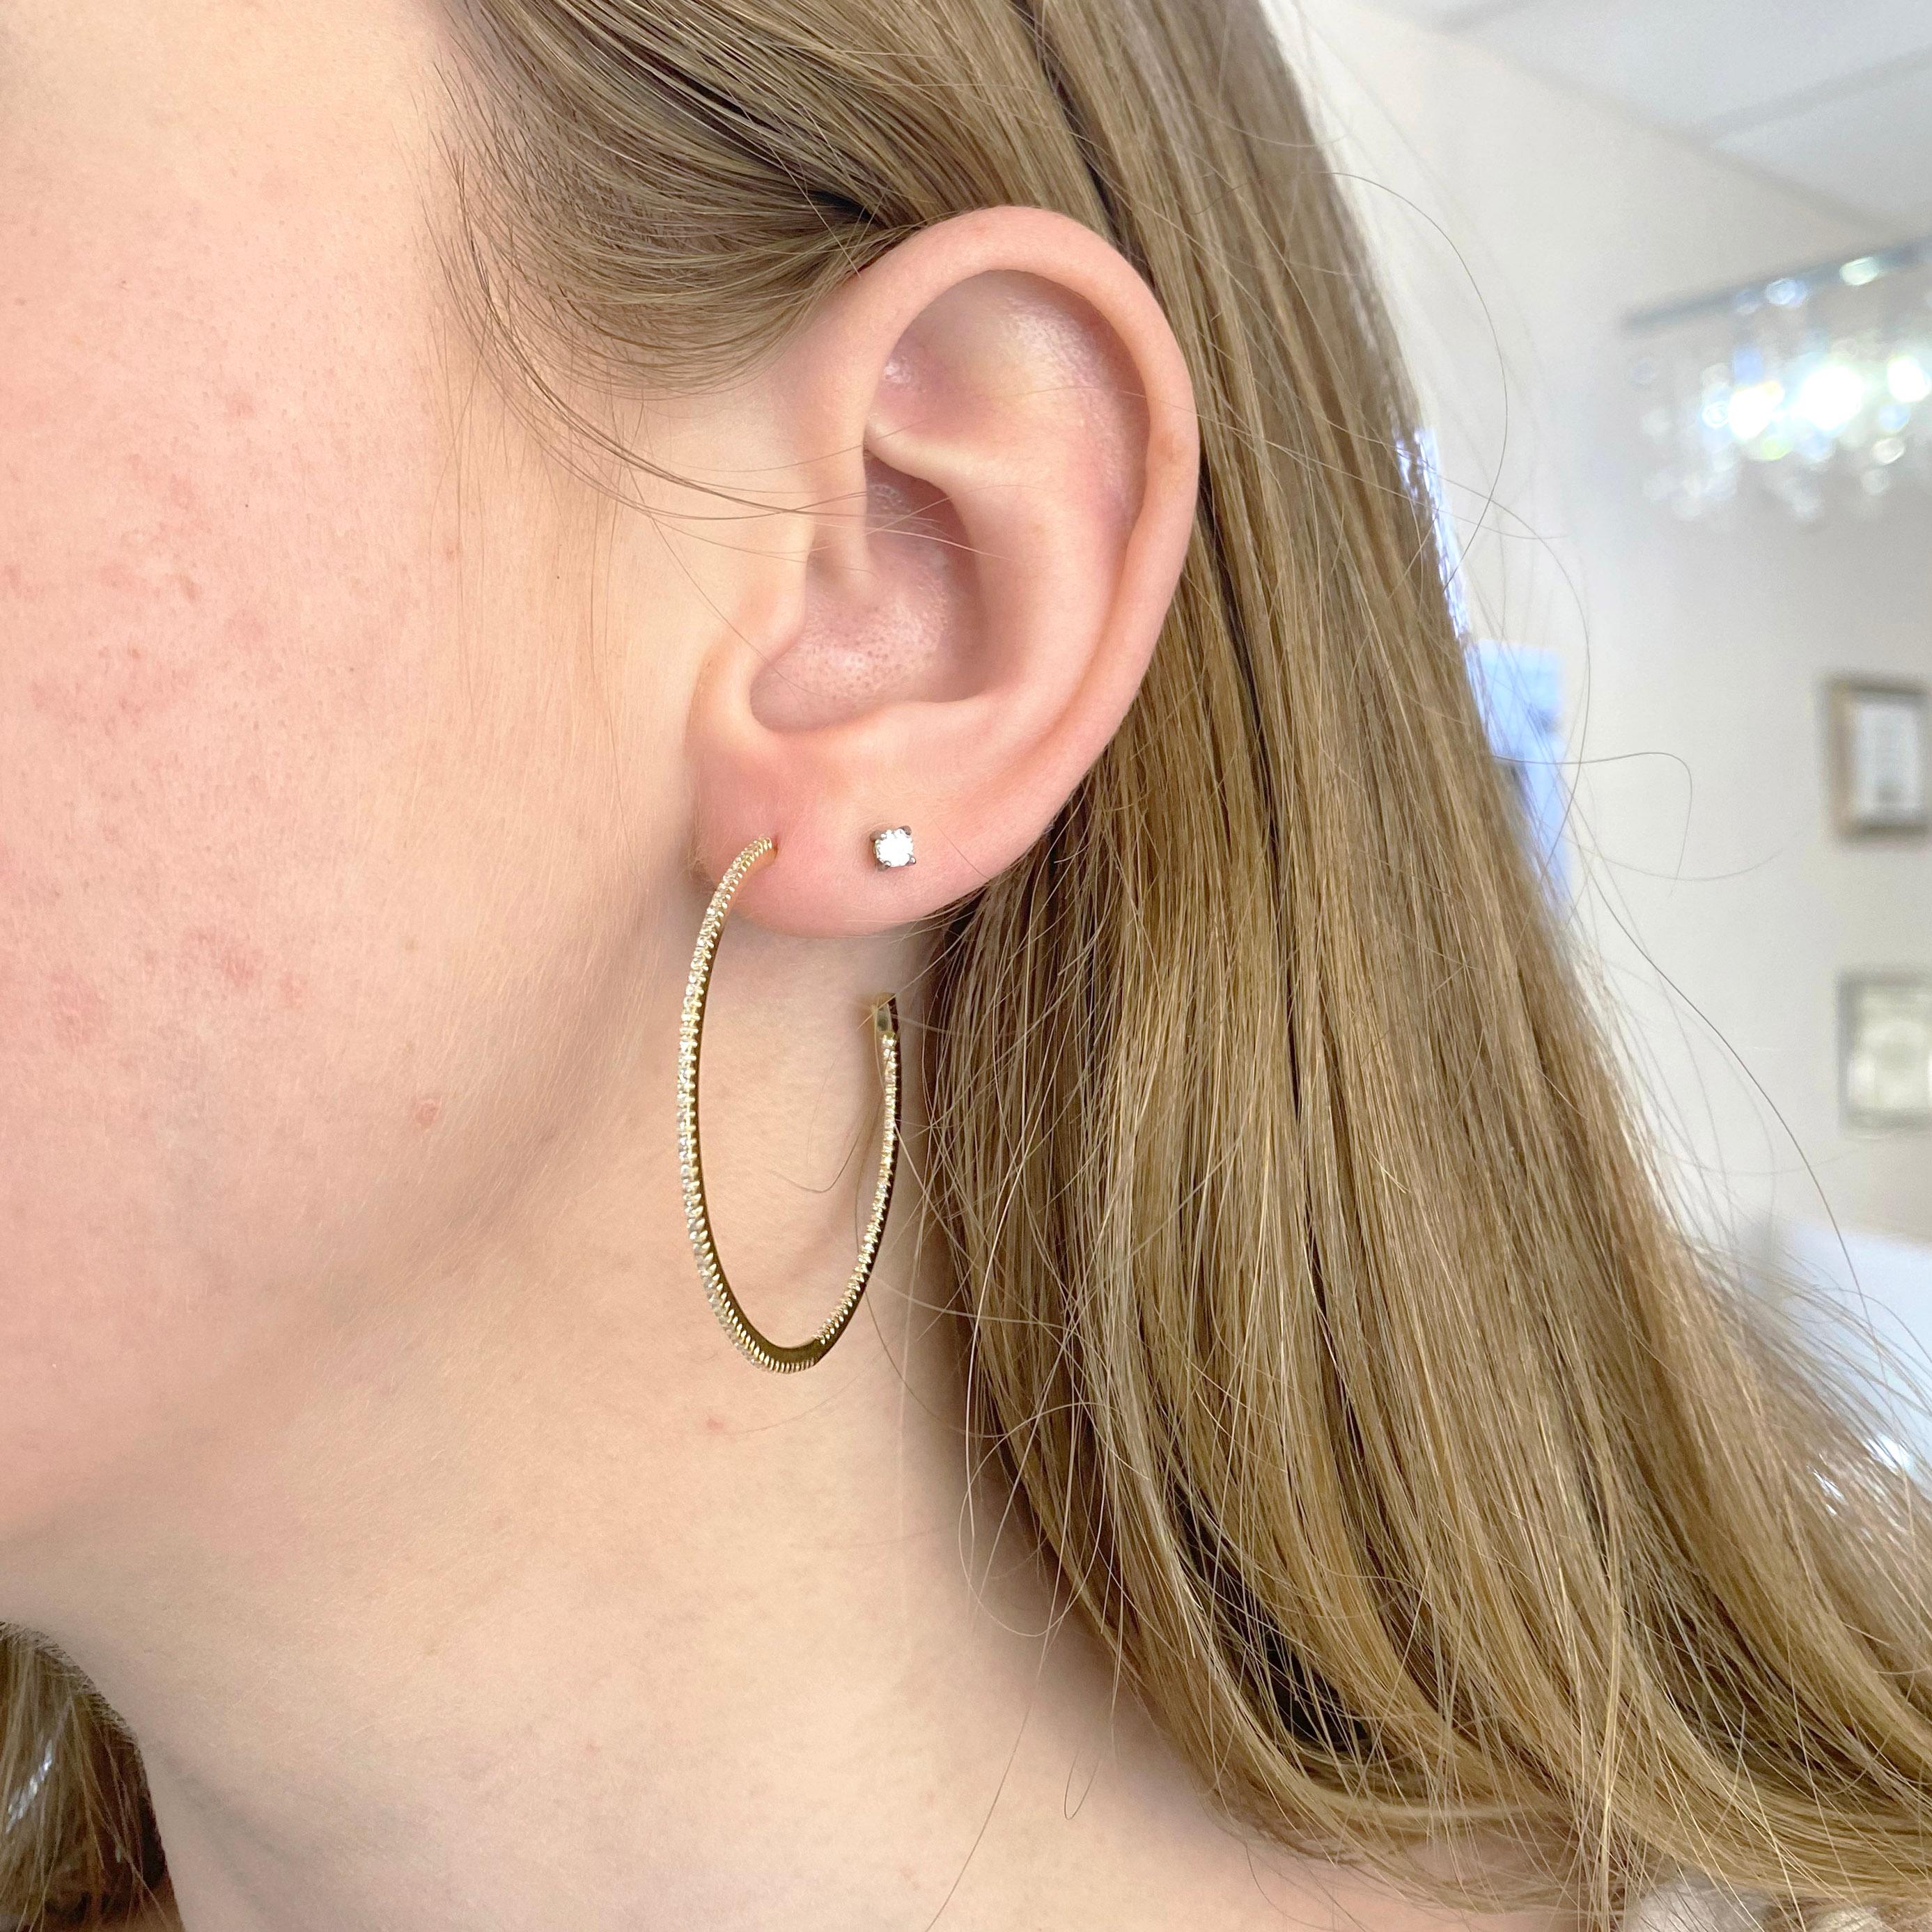 Diese 40 Millimeter großen Diamantohrringe sind perfekt für einen gewagten Look!  Jeder Ohrring ist mit 92 Diamanten besetzt, die einen durchgehenden runden Kreis bilden. Die Ohrringe sind aus massivem 14-karätigem Gelbgold gefertigt.  Diese